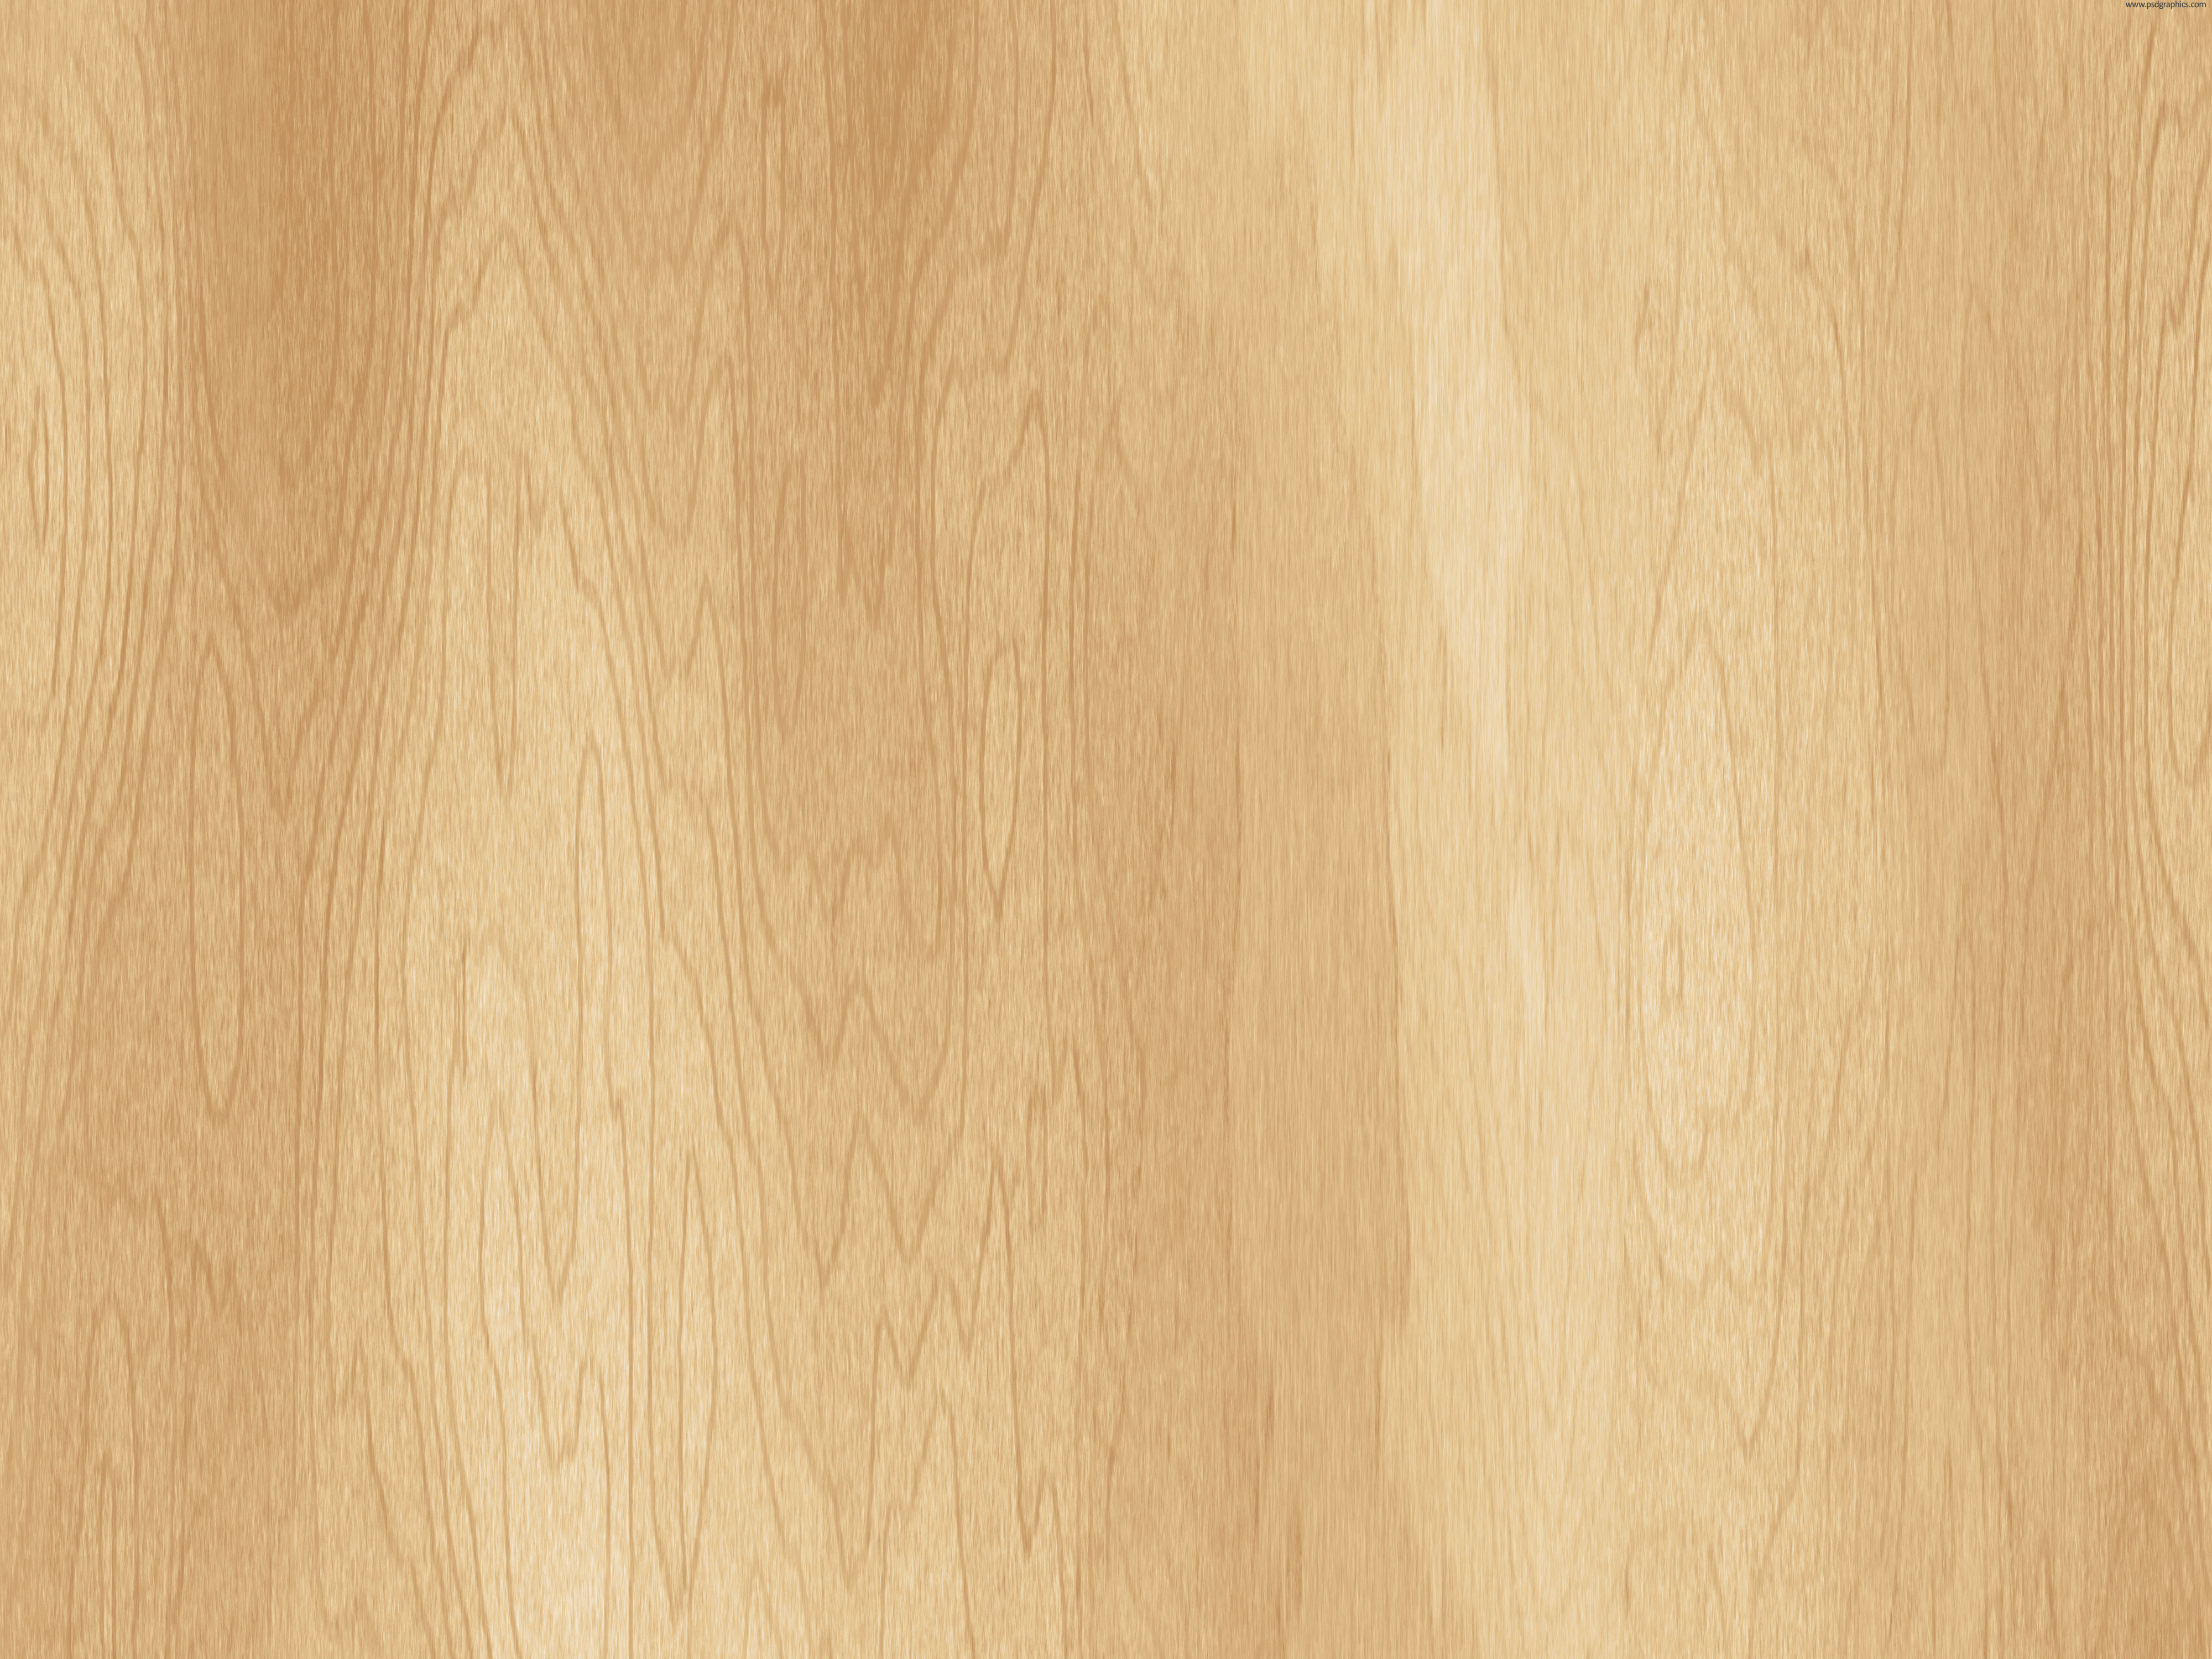 Elements Design High Resolution Wooden Background Okilla